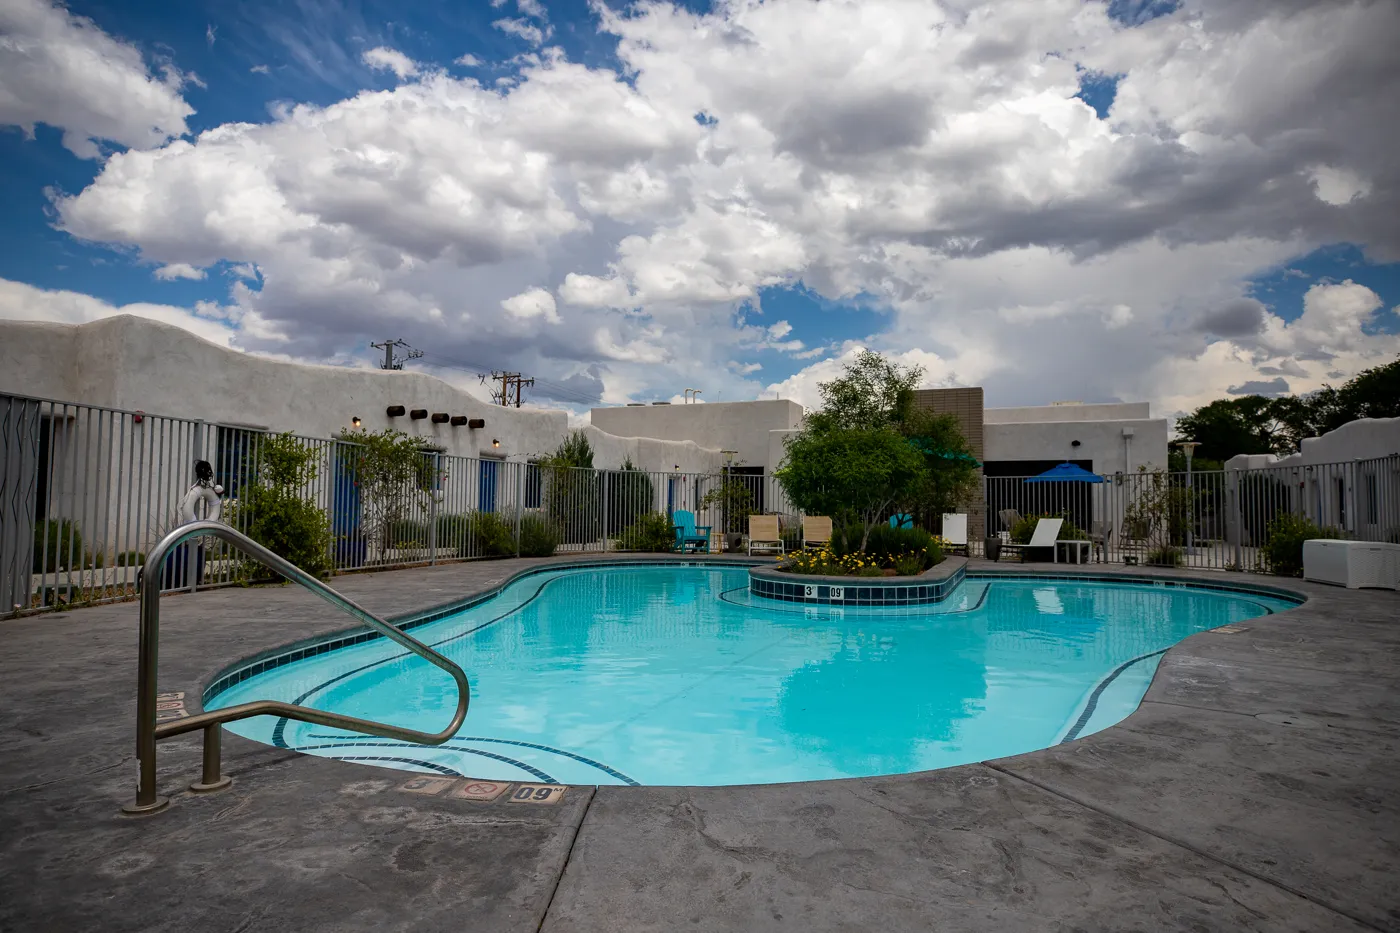 Wading pool at El Vado Motel in Albuquerque, New Mexico (Route 66 Motel)